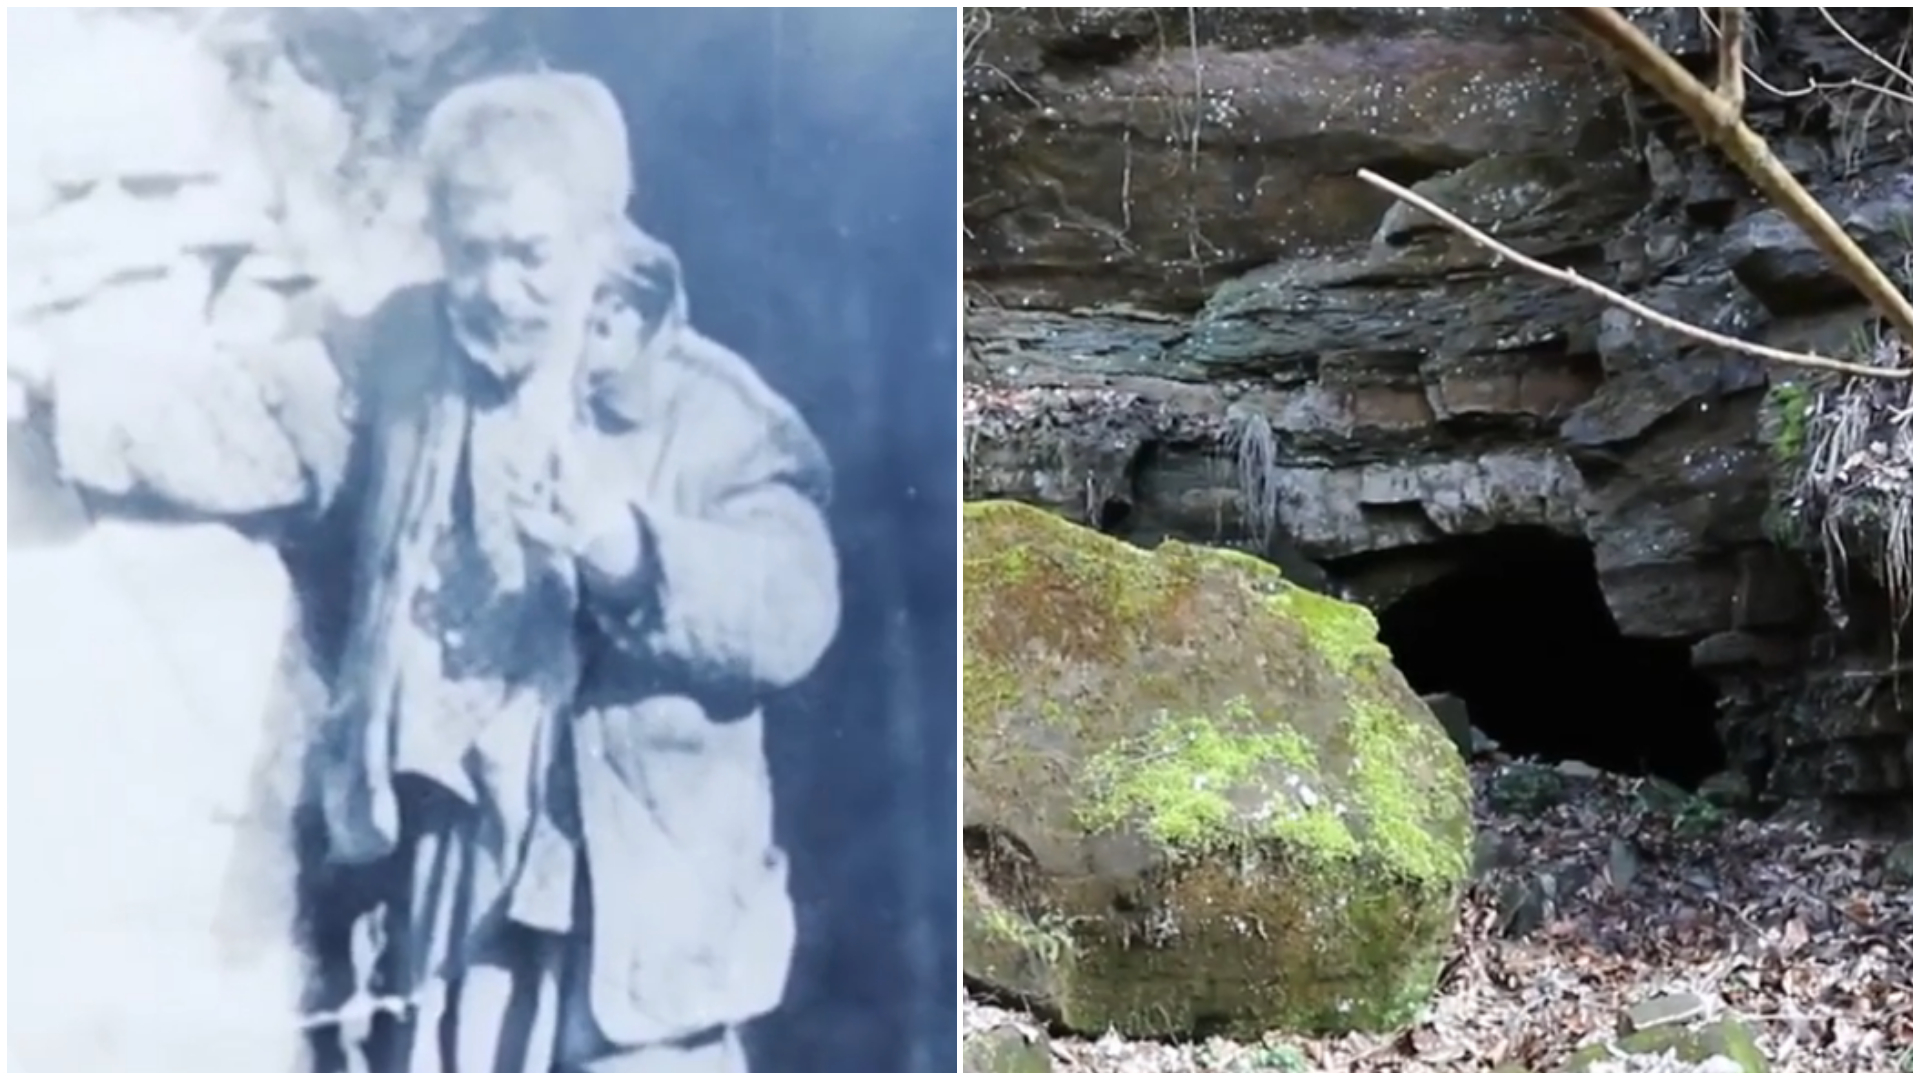 Povestea lui Iancu din peșteră, românul care ar fi trăit 140 de ani. “Avea o rochie roșie, batic pe cap și o barbă mare de tot”